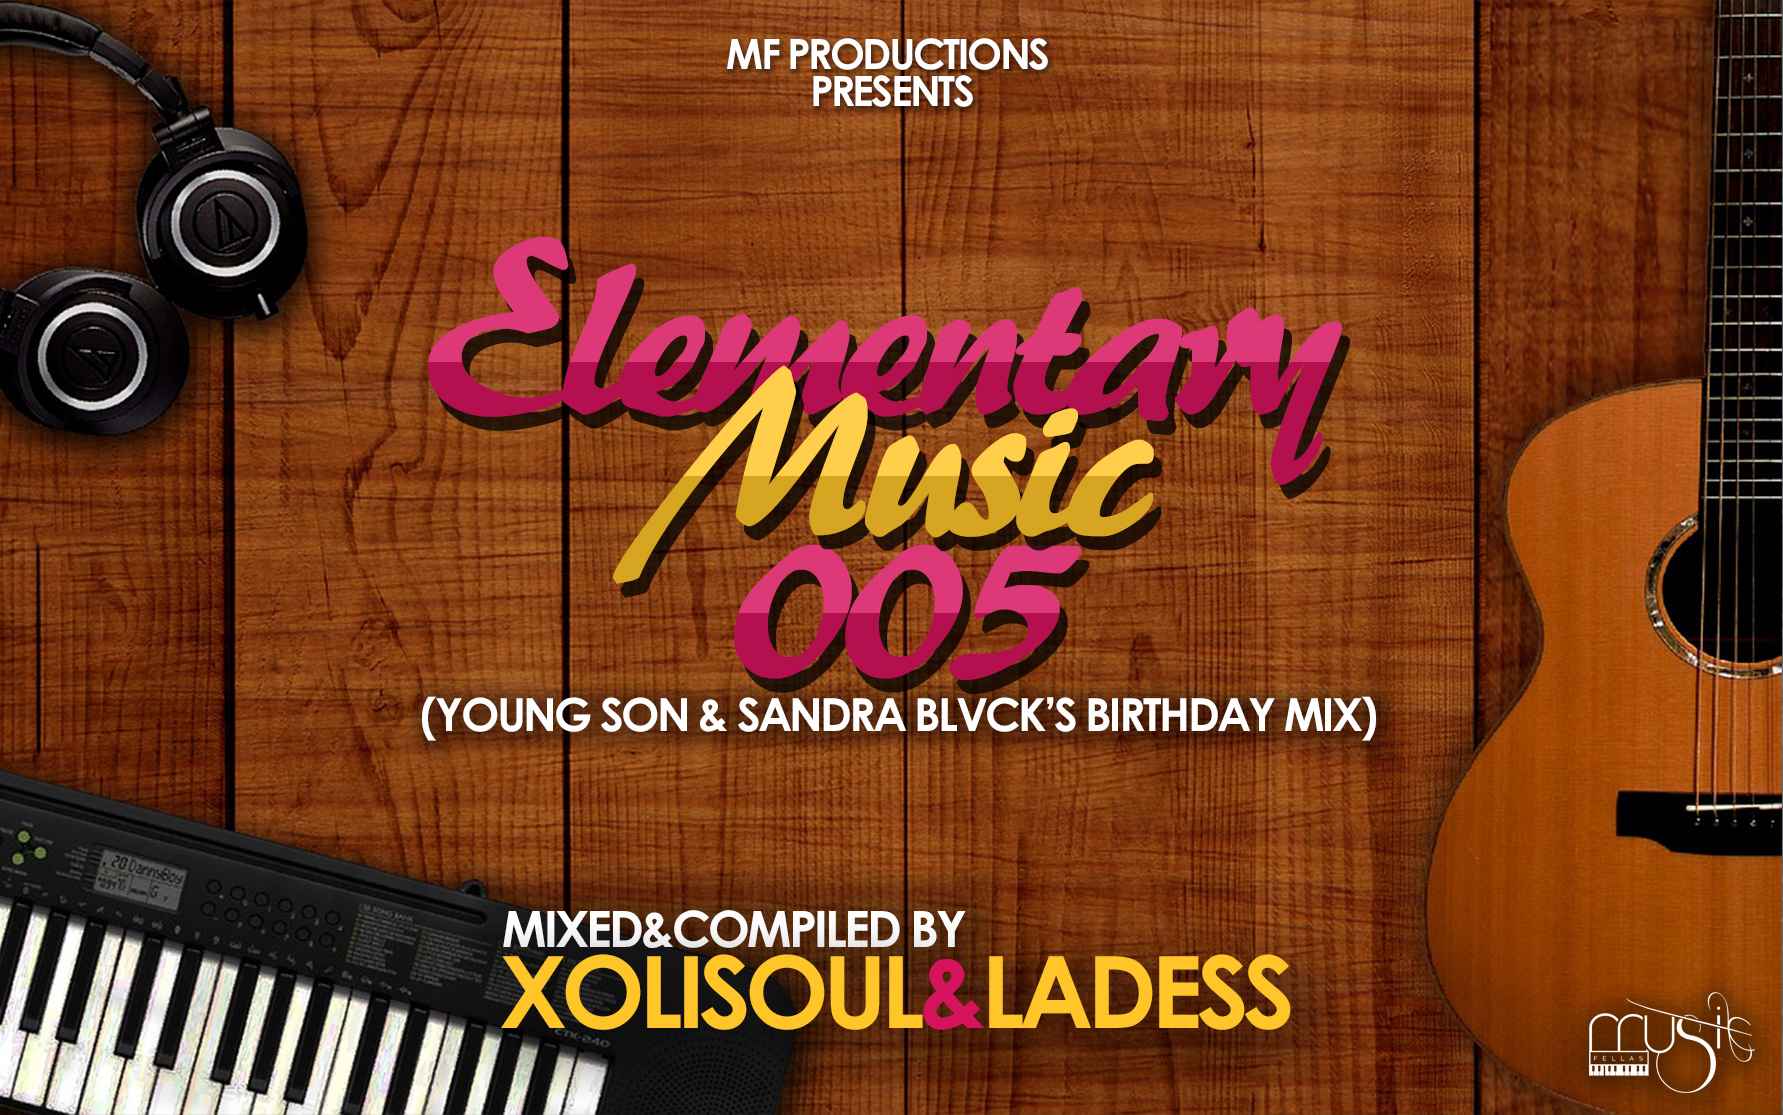 XoliSoul & LaDess Elementary Music 005